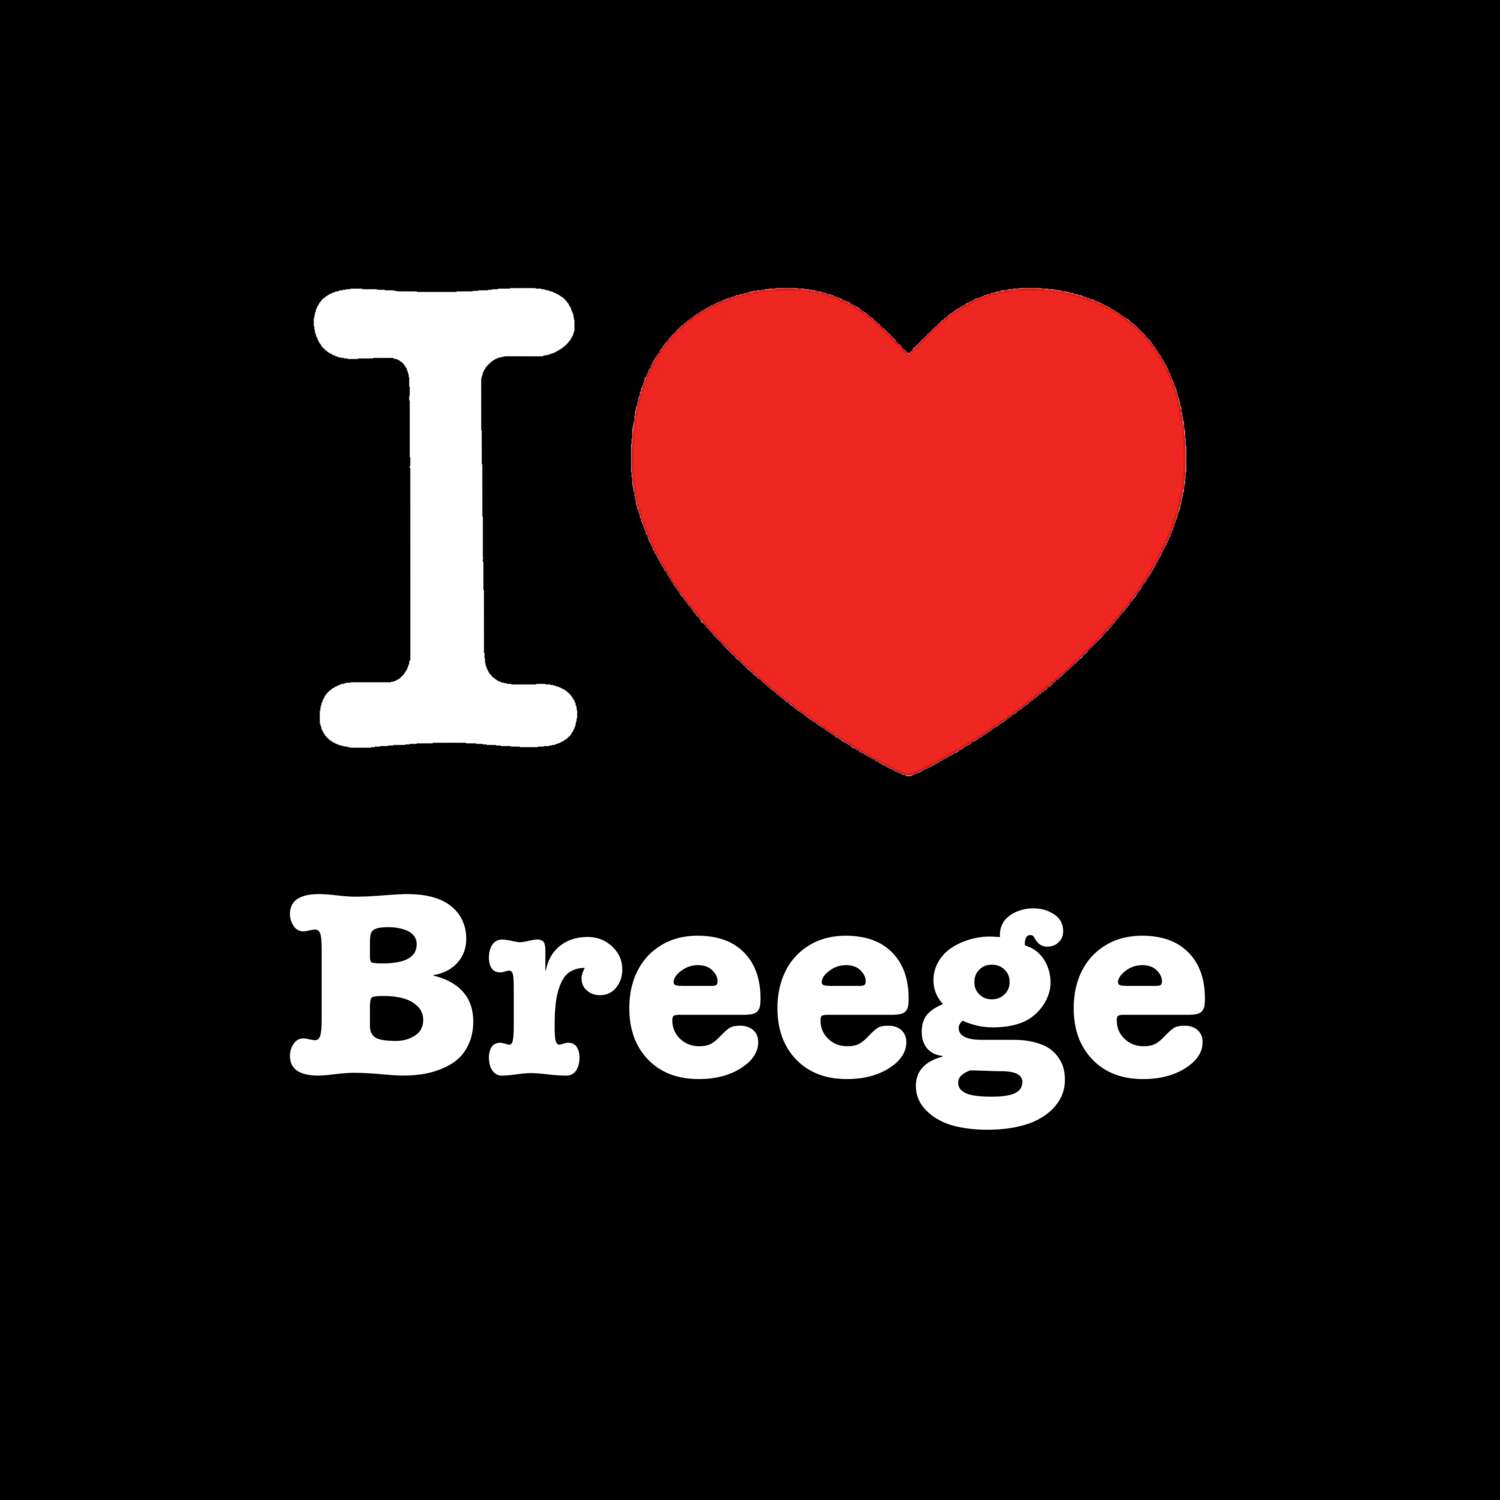 Breege T-Shirt »I love«